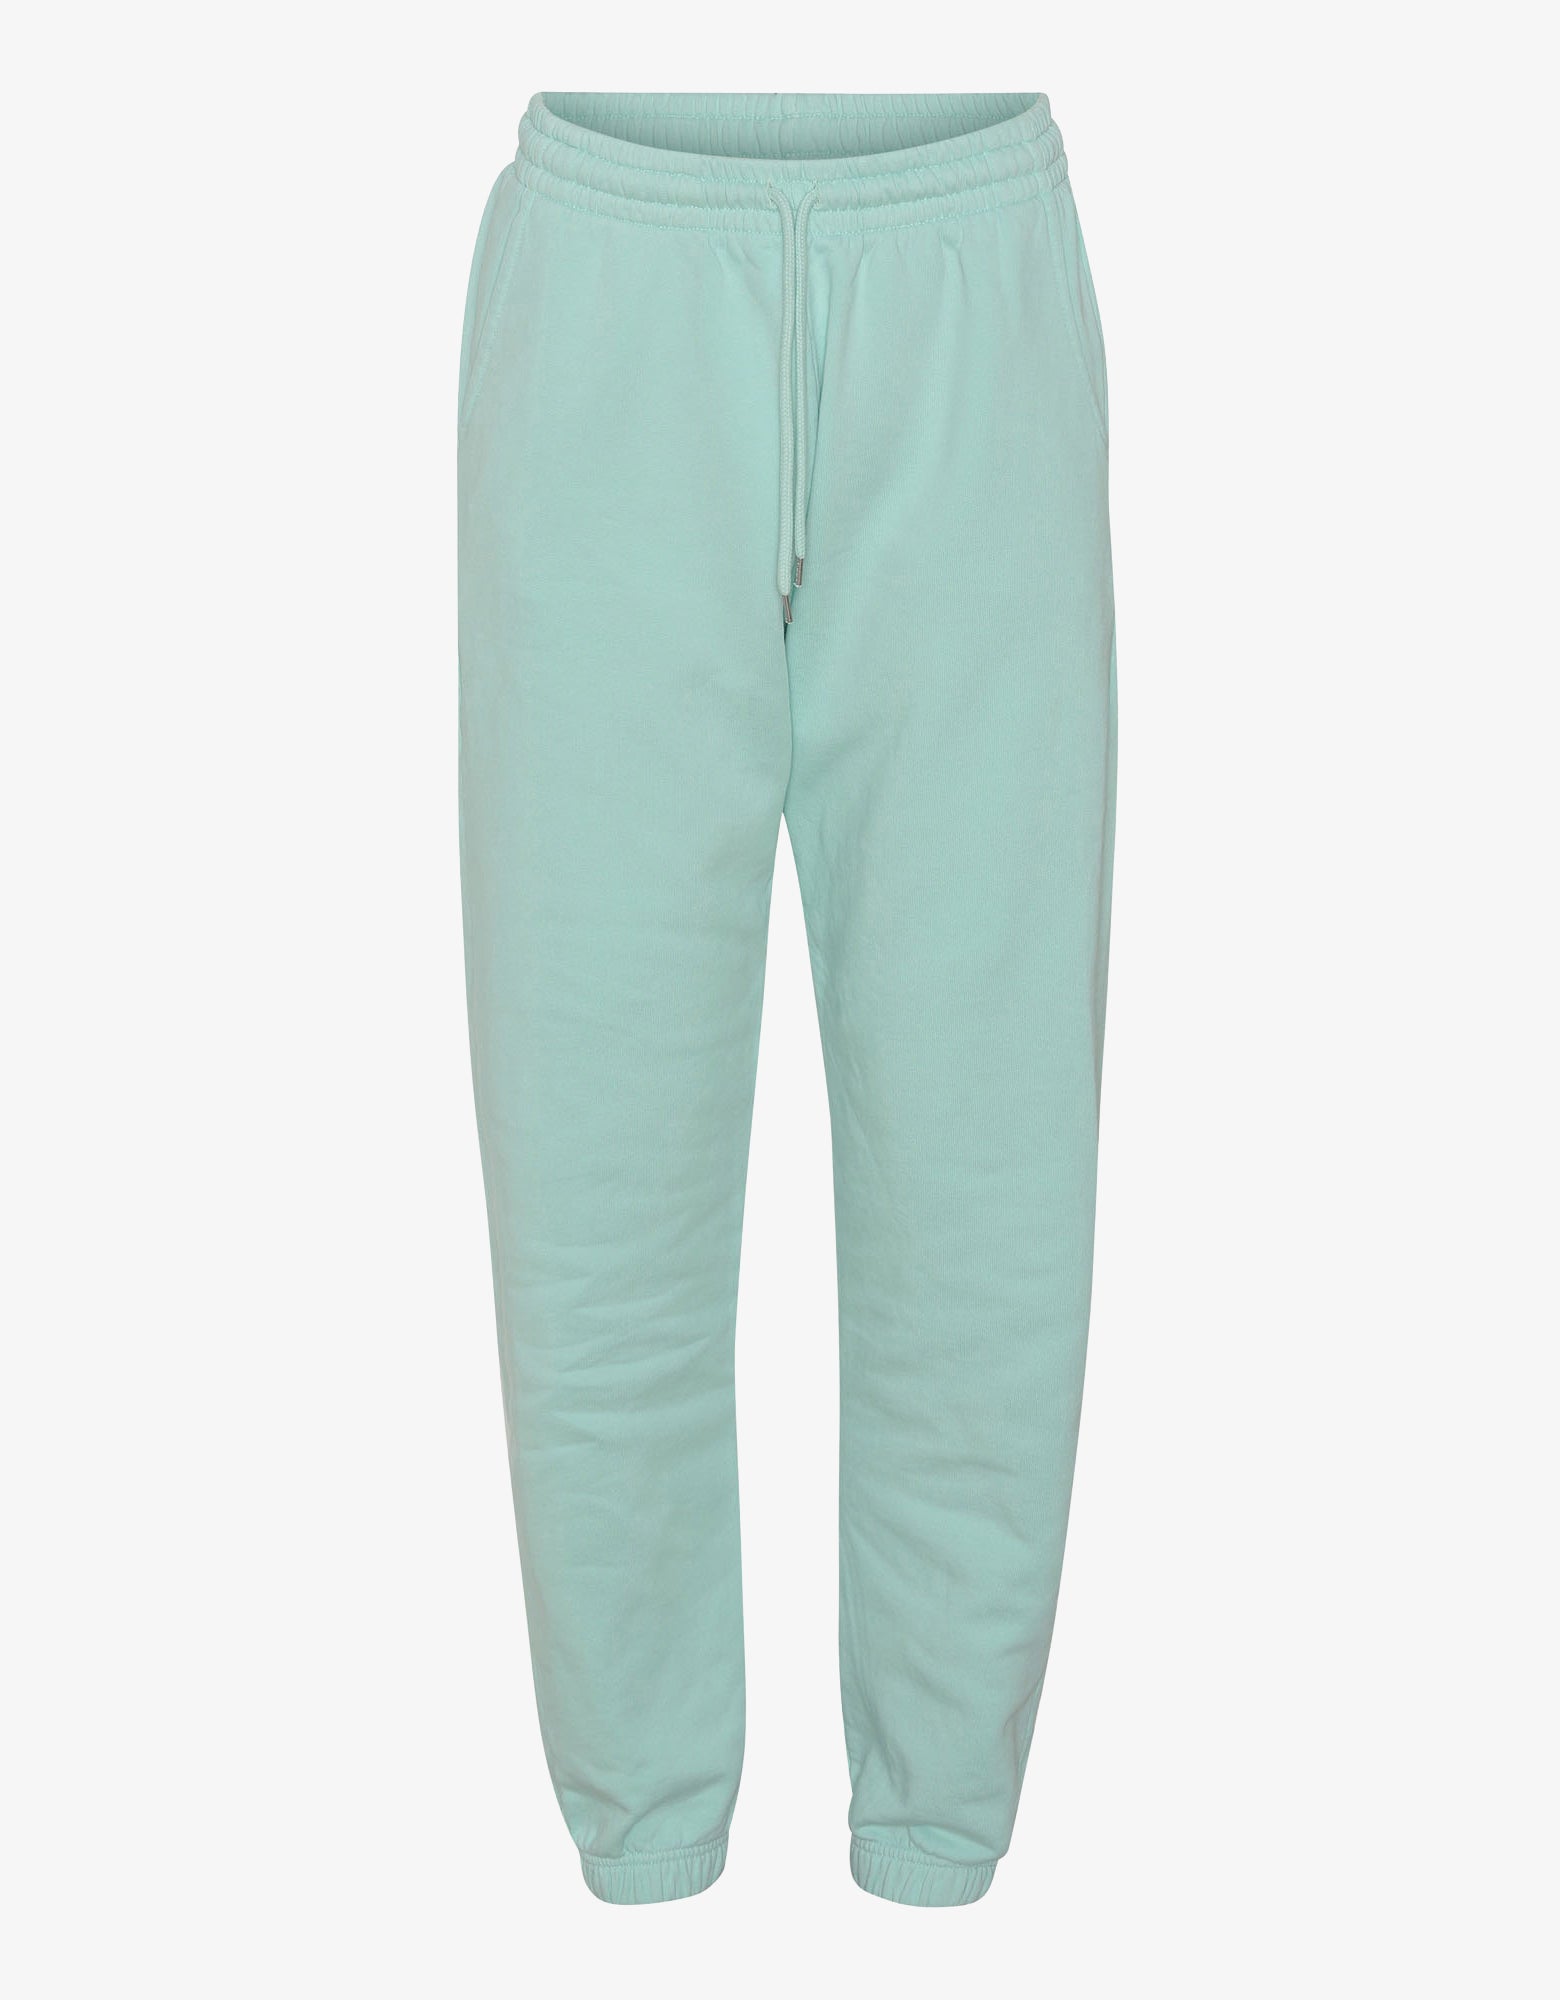 Colorful Standard Organic Sweatpants Pants Light Aqua